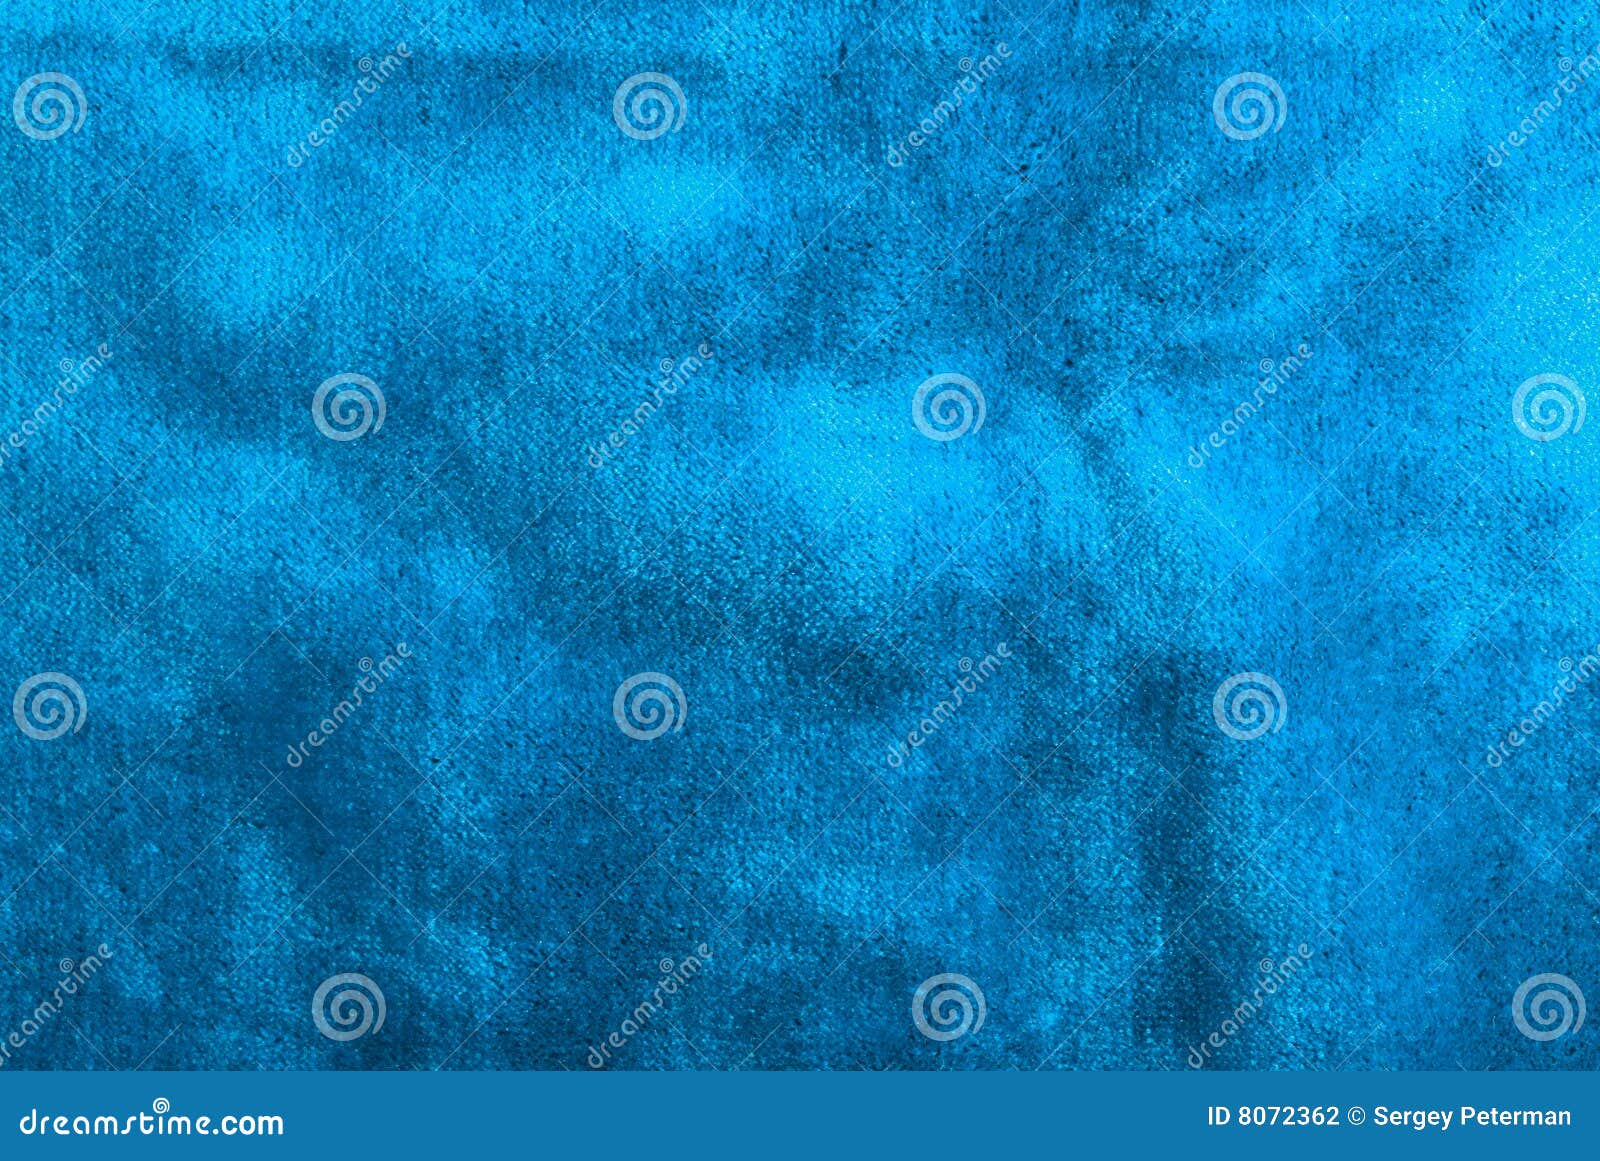 blue velvet